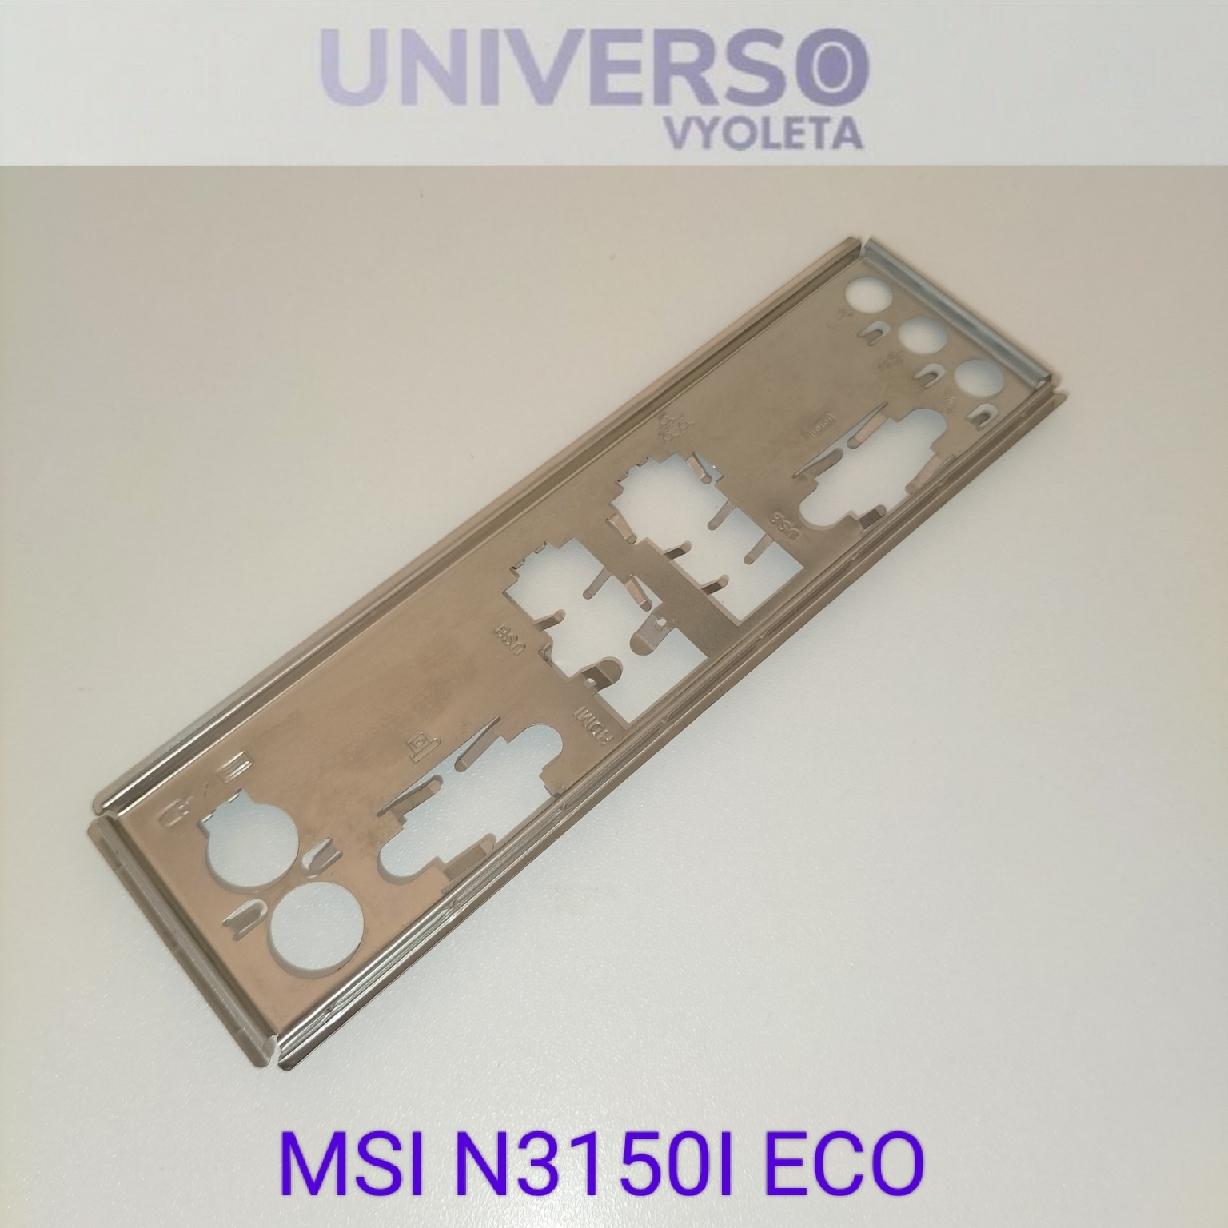 MSI N3150I ECO